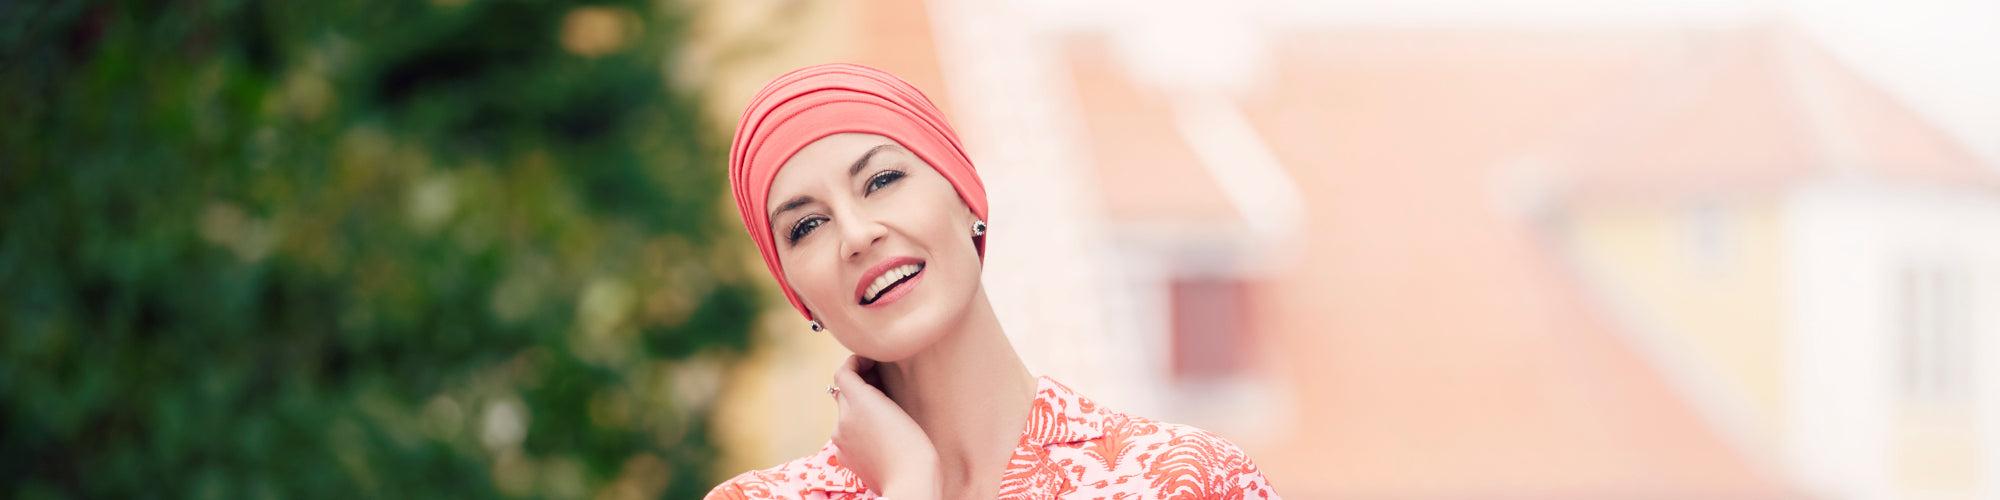 Che caratteristiche deve avere un turbante per chemioterapia?